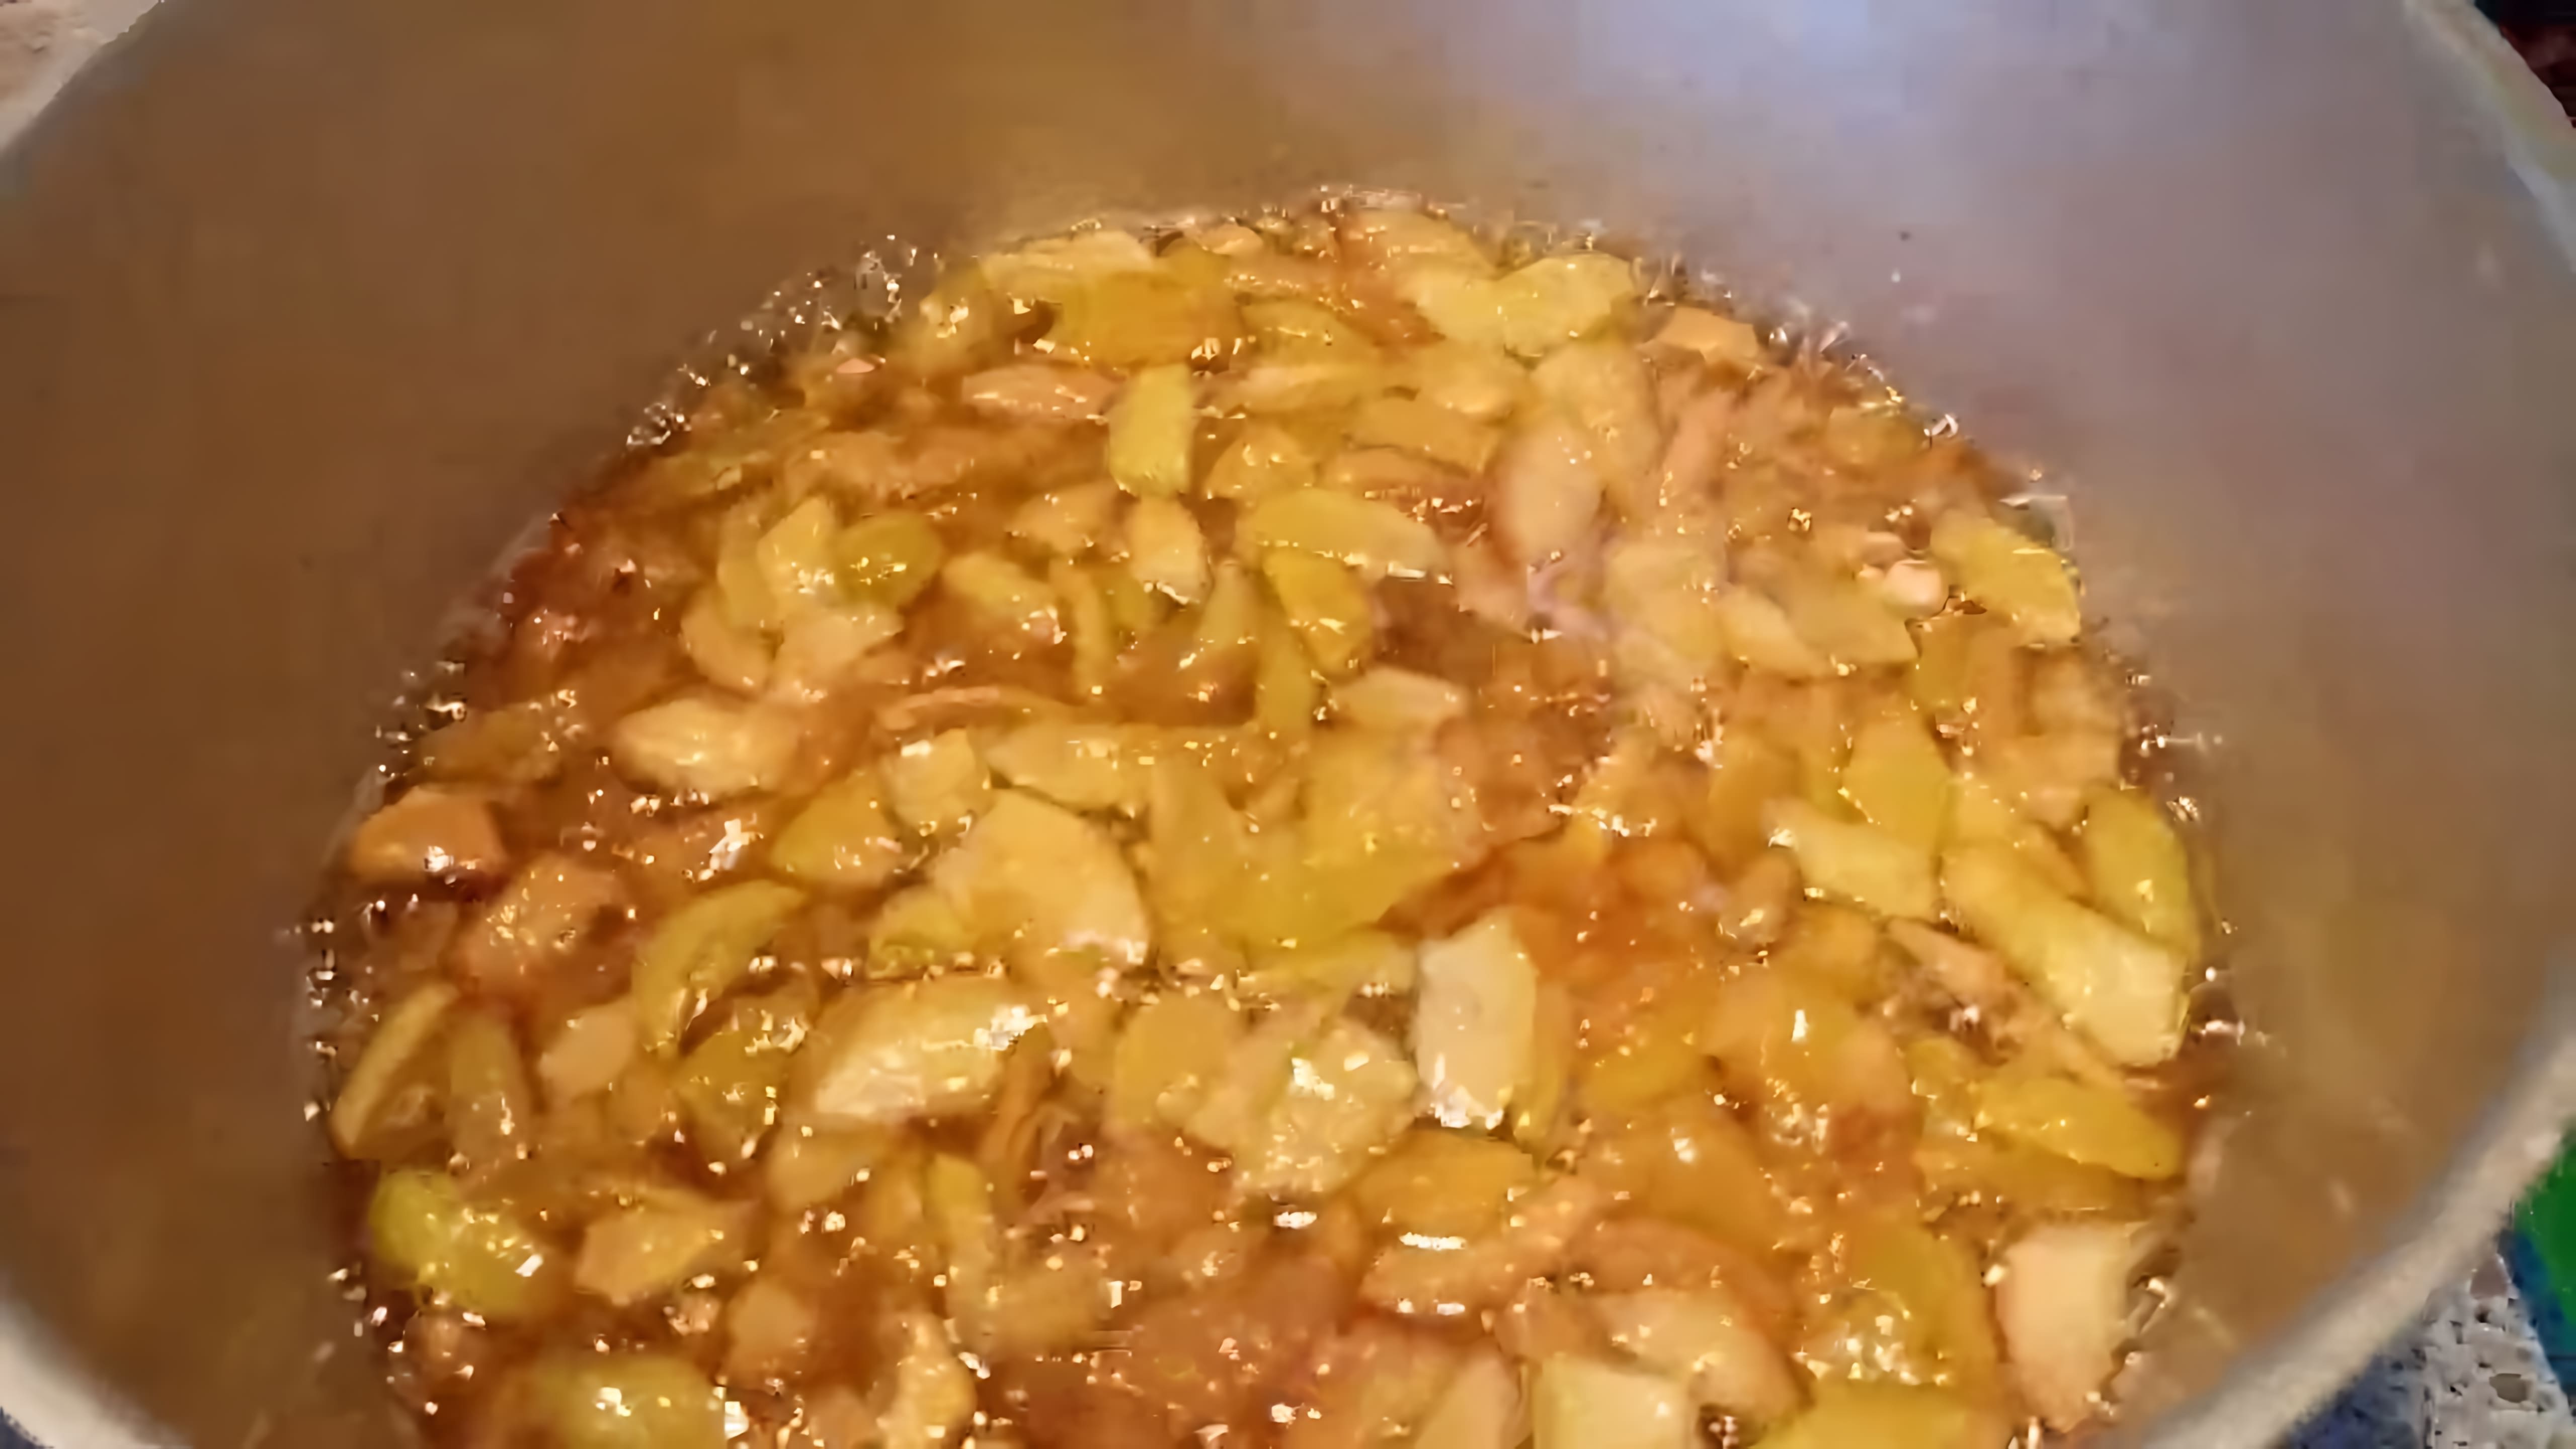 В этом видео демонстрируется процесс приготовления яблочного варенья